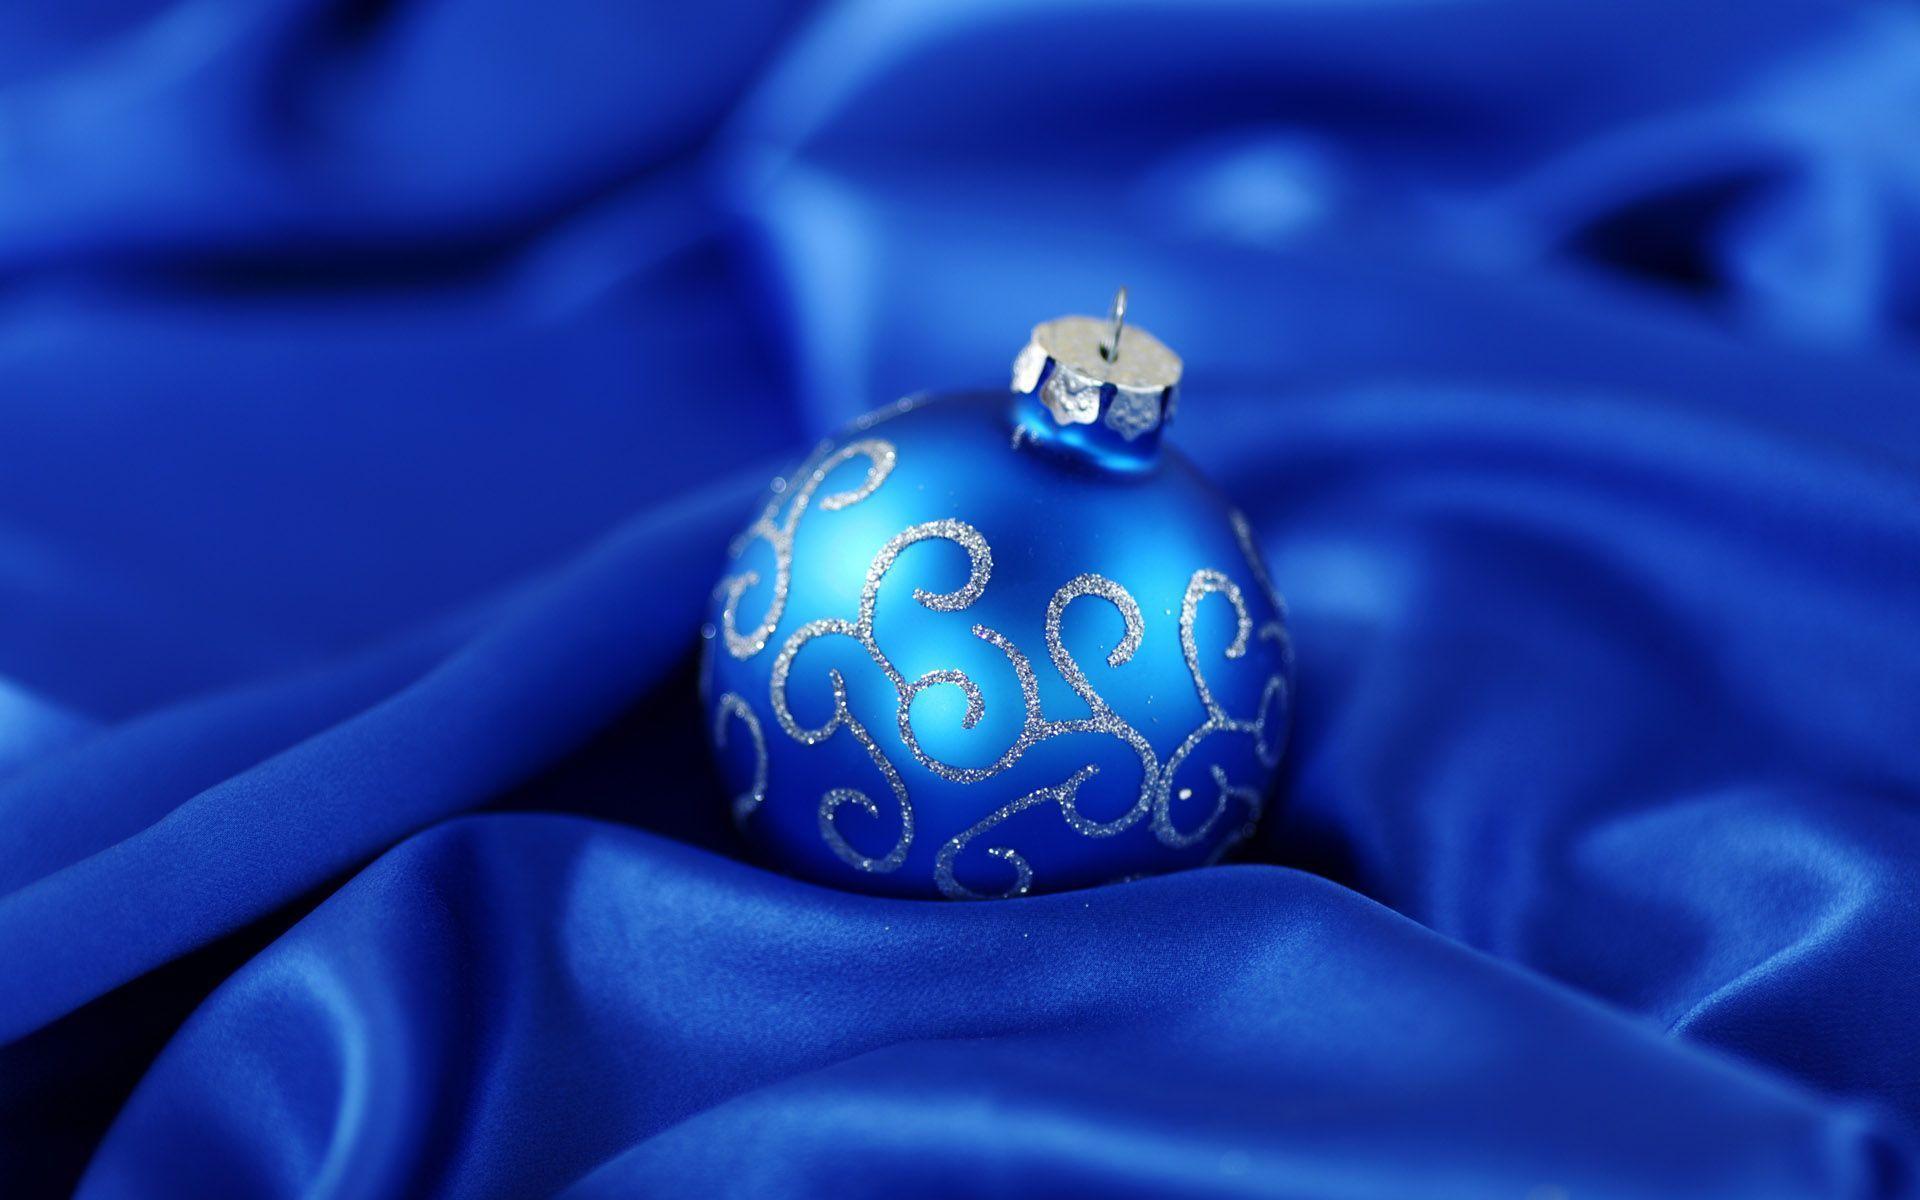 Wallpaper For > Blue Christmas Ornament Wallpaper